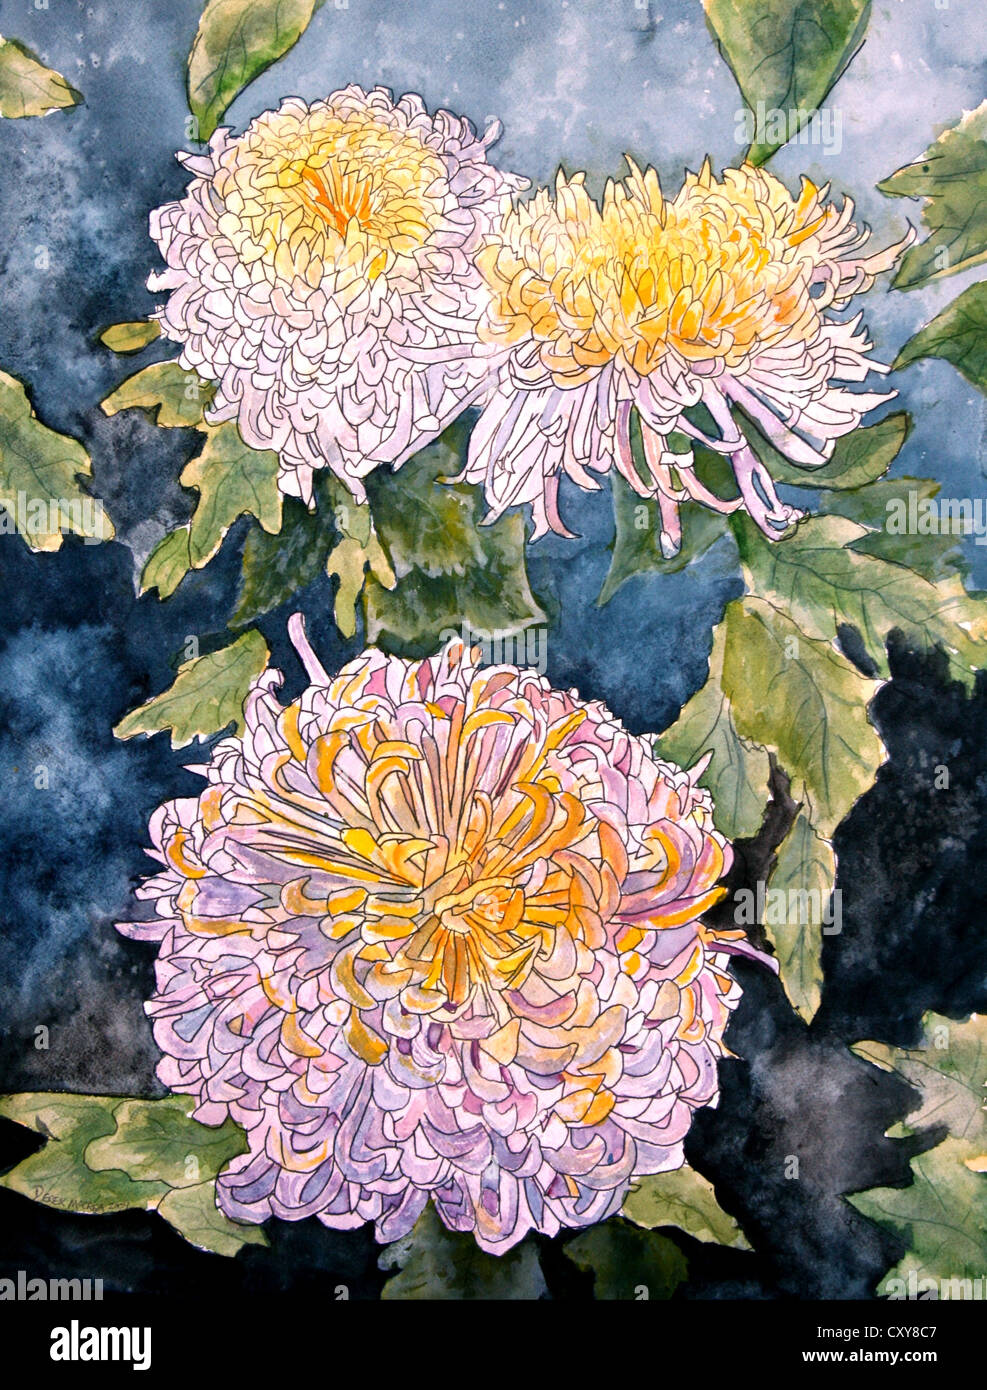 chrysanthemums flower paintings Stock Photo